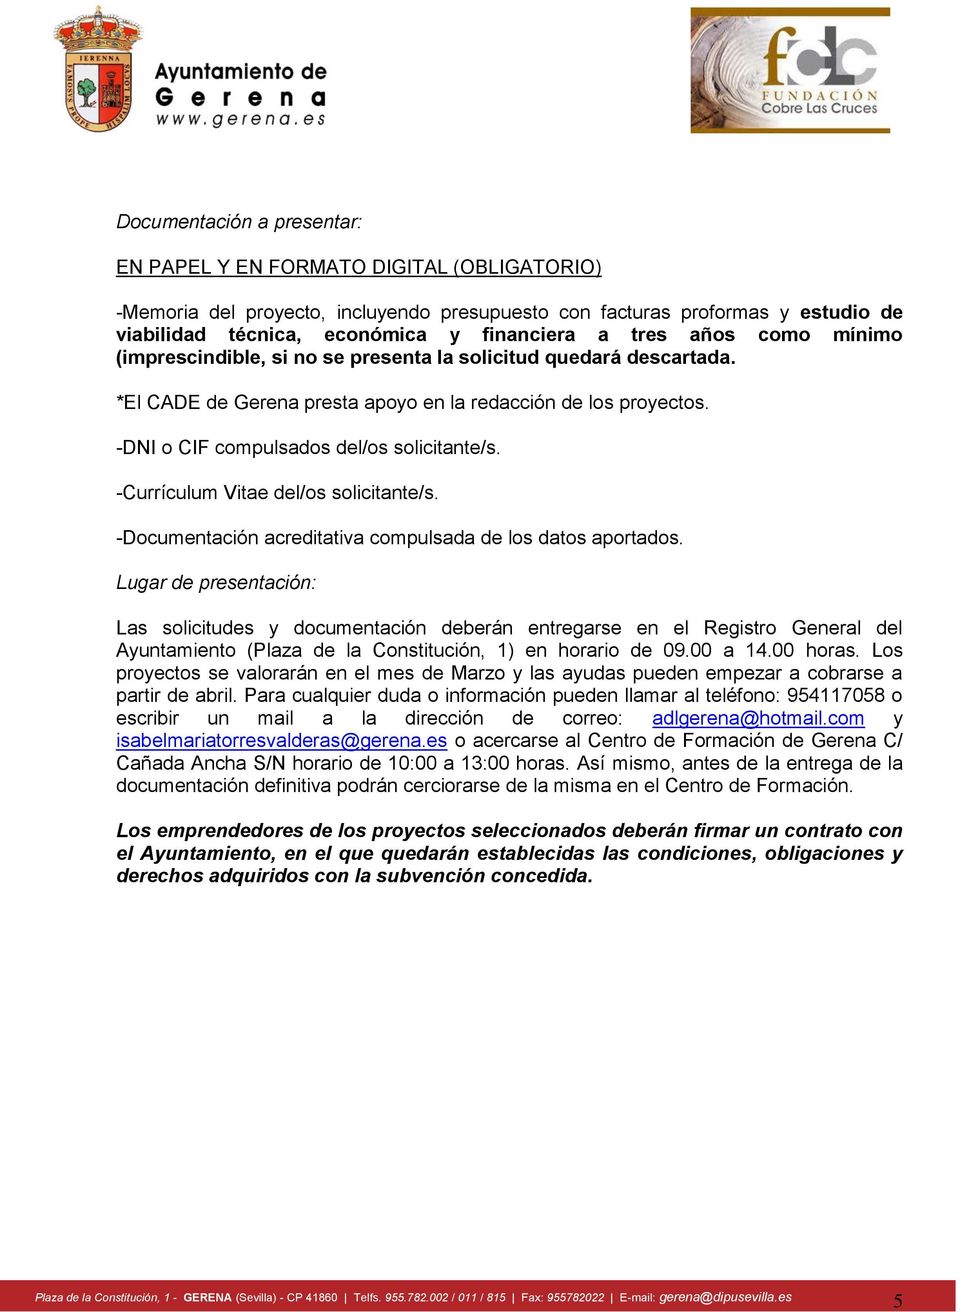 -Currículum Vitae del/os solicitante/s. -Documentación acreditativa compulsada de los datos aportados.